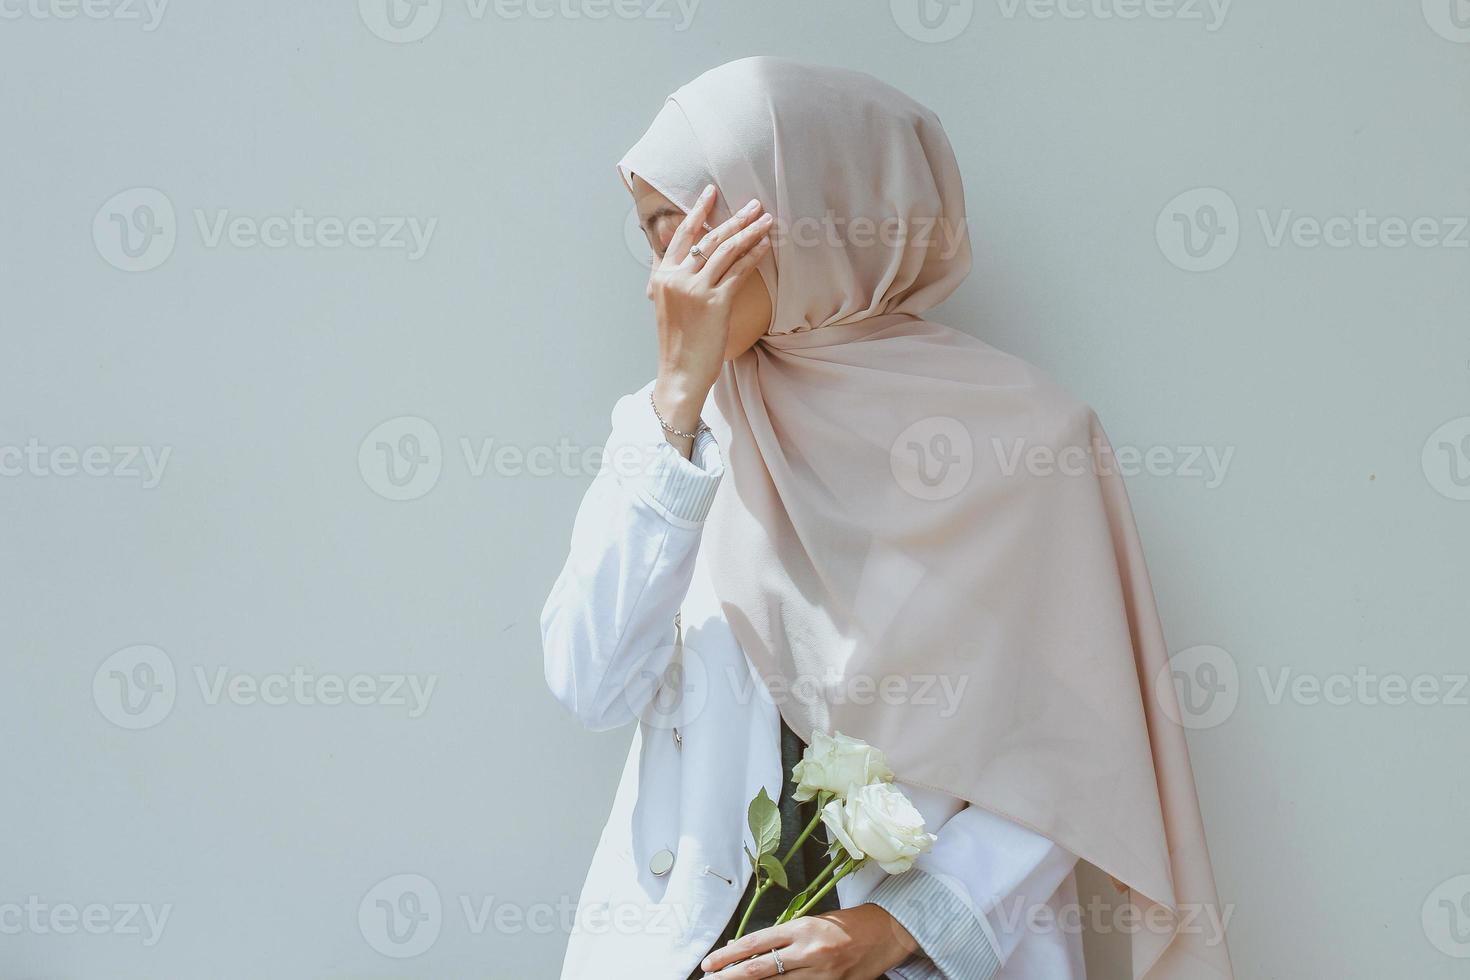 jovem muçulmana segurando rosa branca e cobrindo o rosto com a mão foto